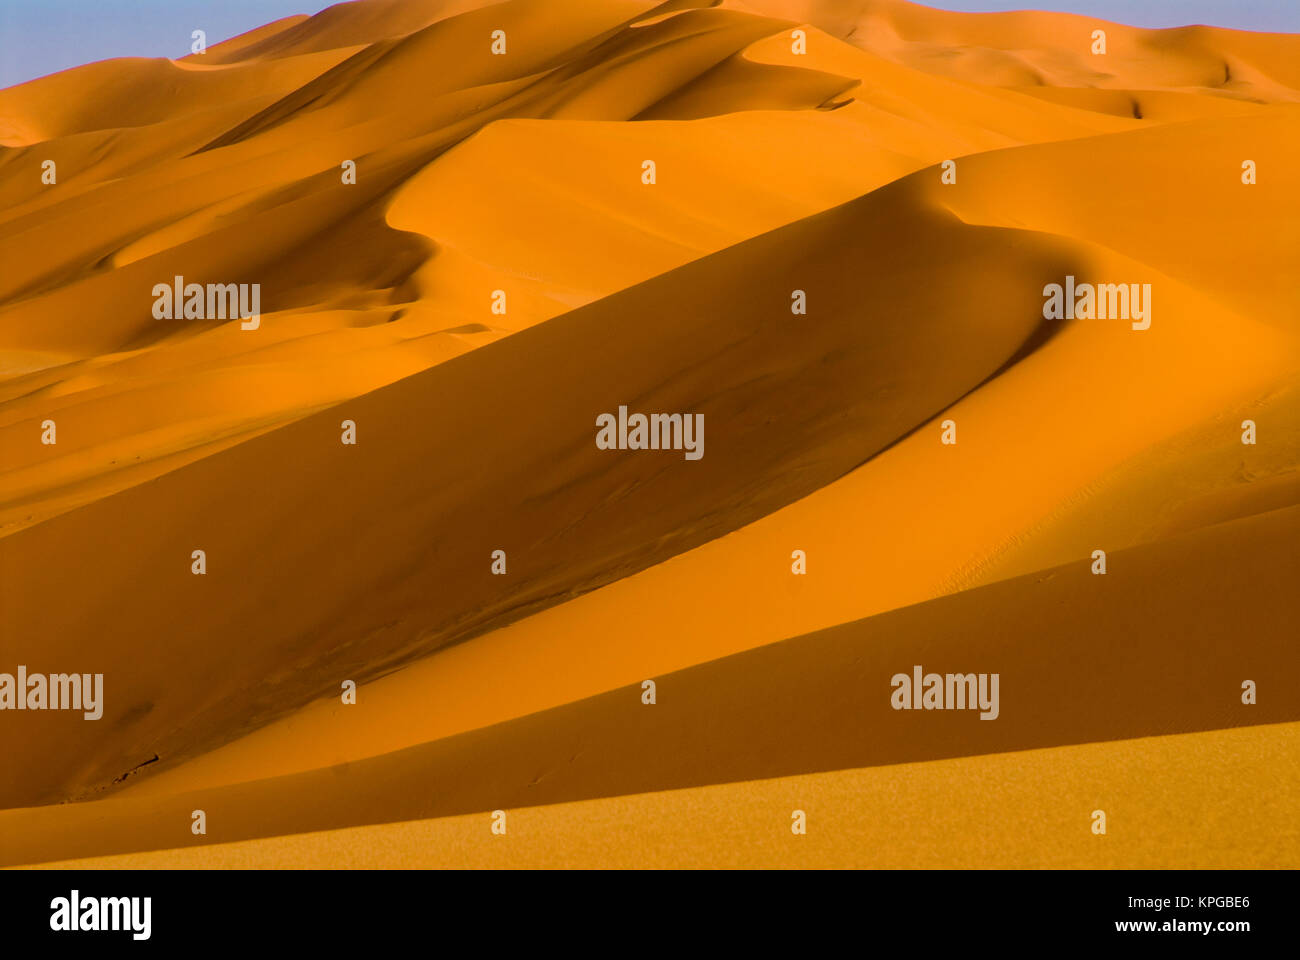 Libya, Fezzan, dunes of Erg Murzuq Stock Photo